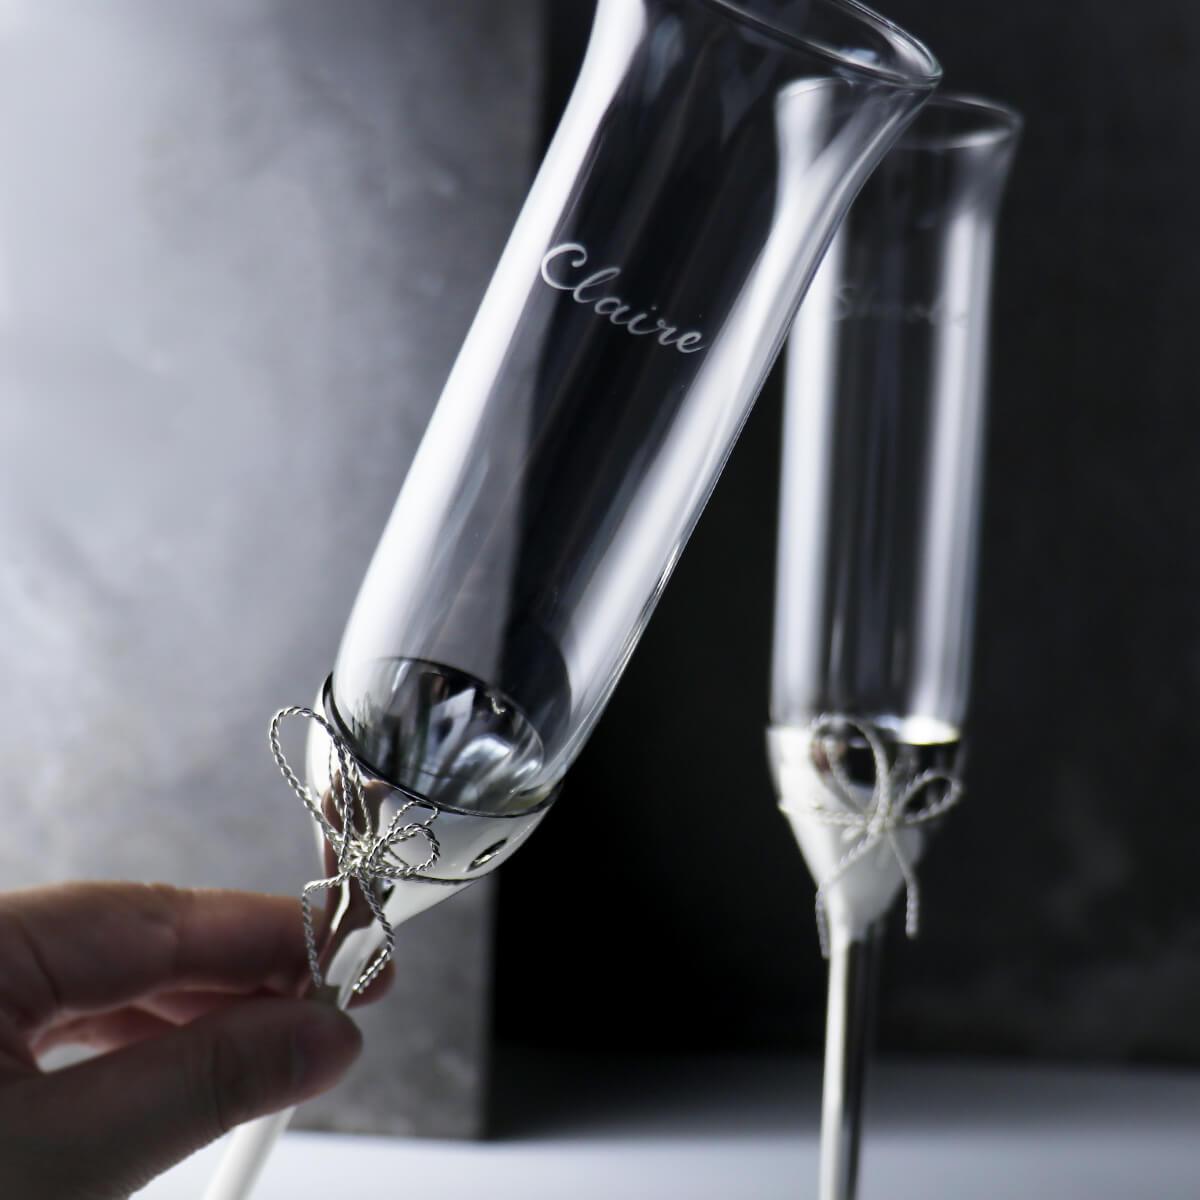 (一對價)150cc 英國Wedgwood Vera Wang愛之結婚禮香檳對杯 客製手工刻字 - MSA玻璃雕刻